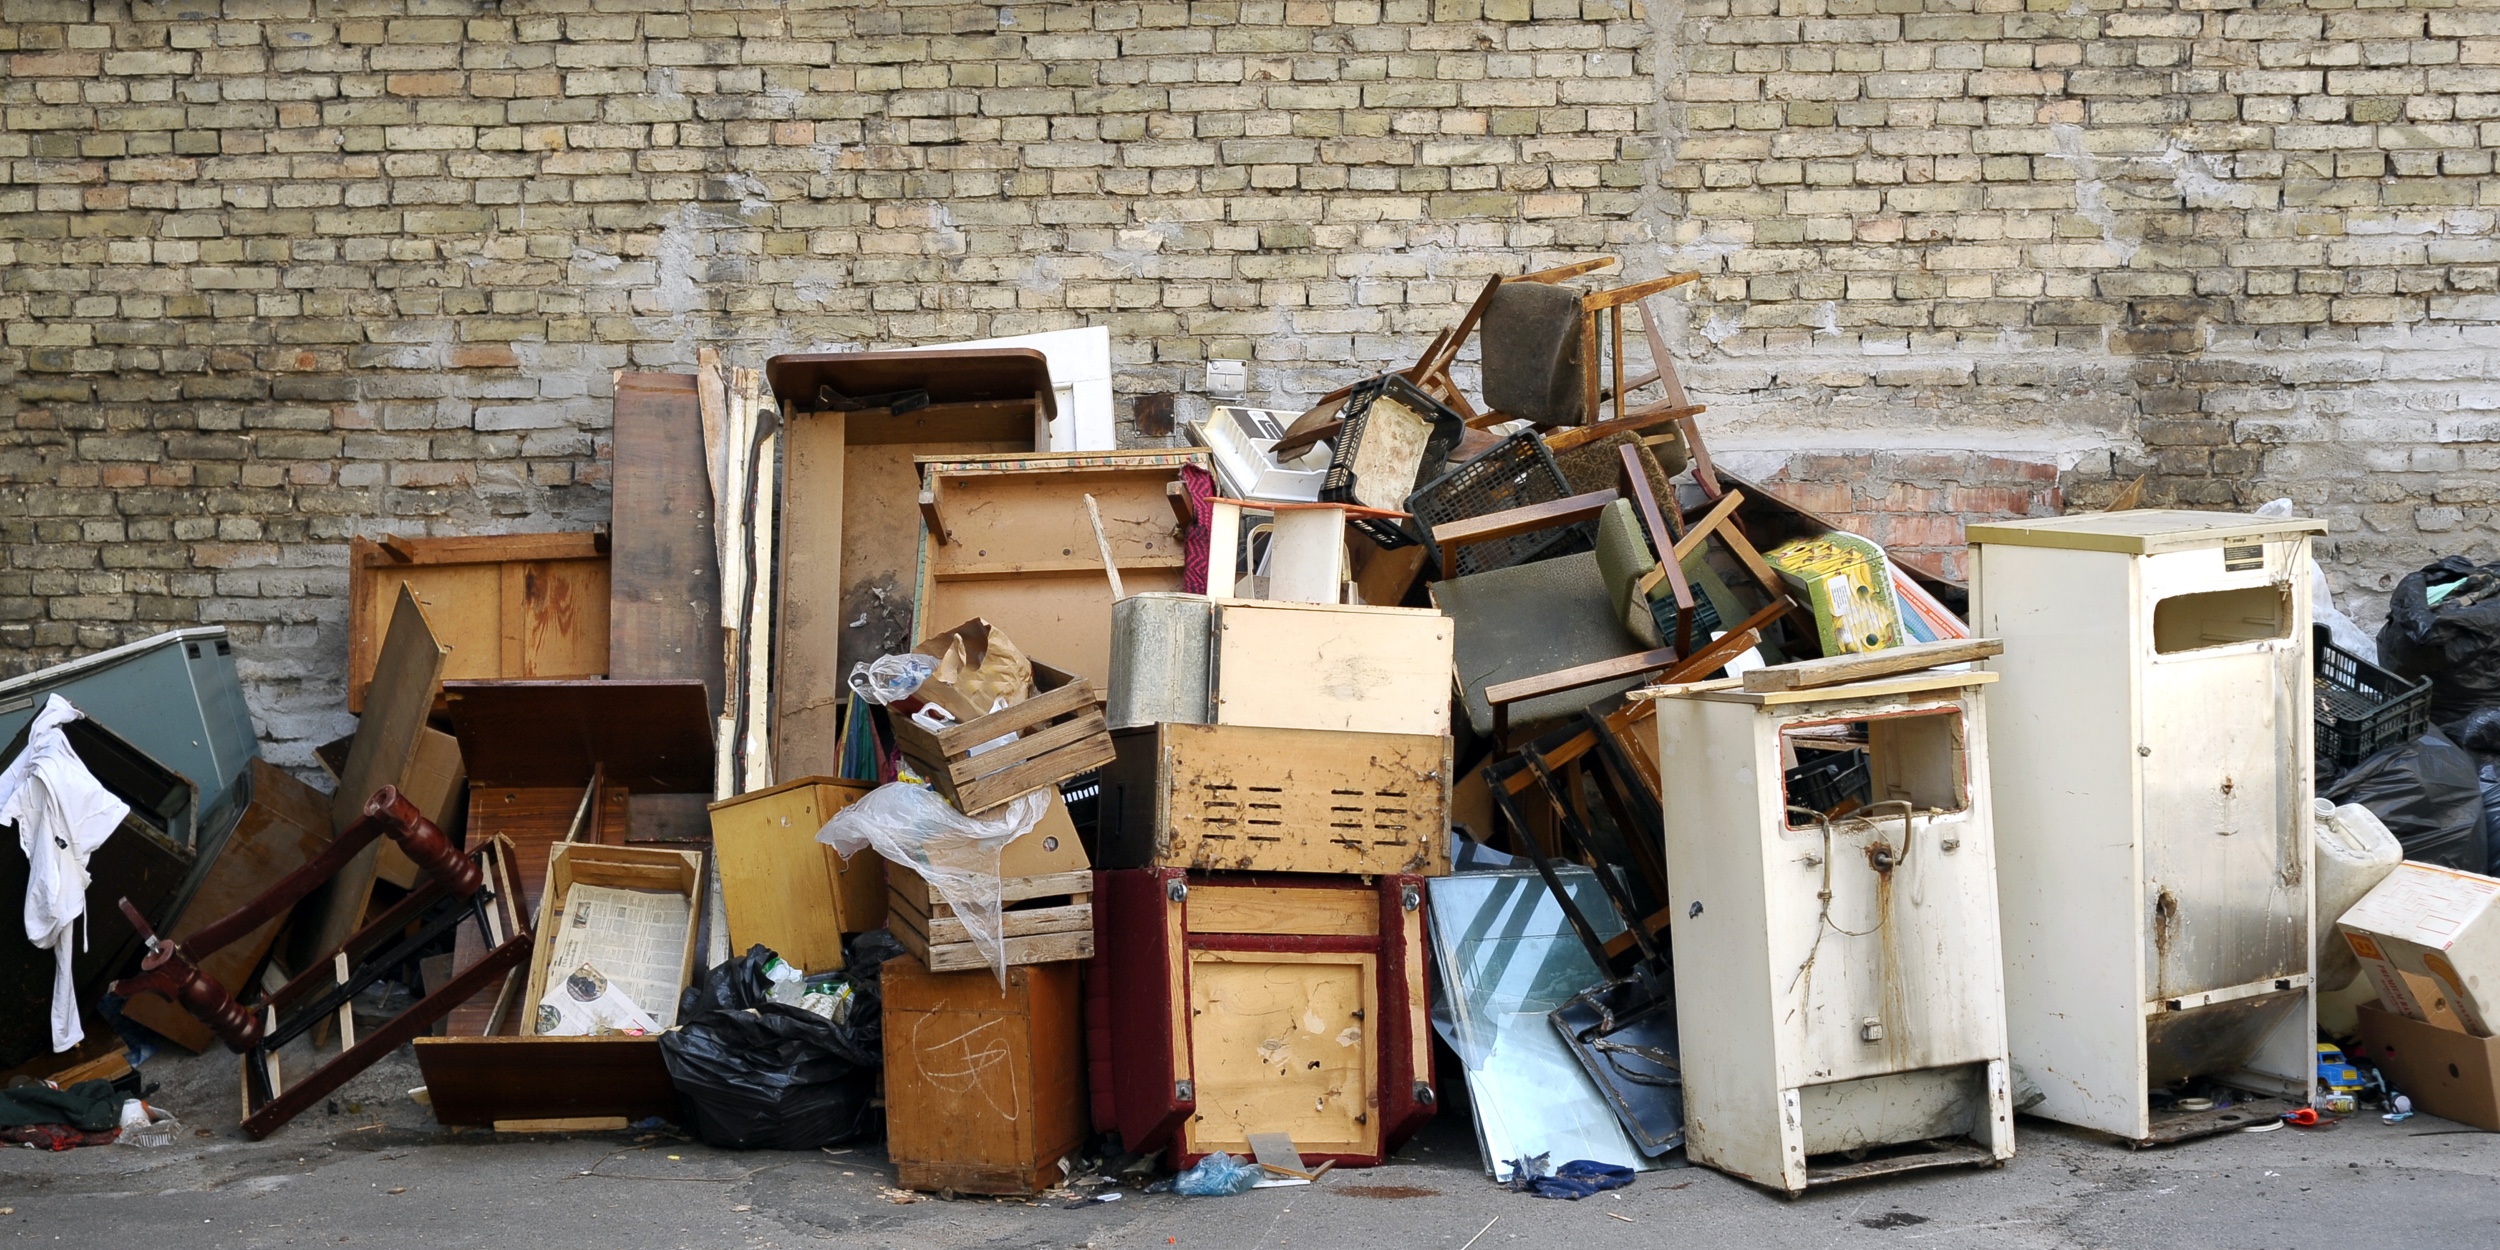 66 вещей, от которых вам стоит избавиться во время ближайшей уборки